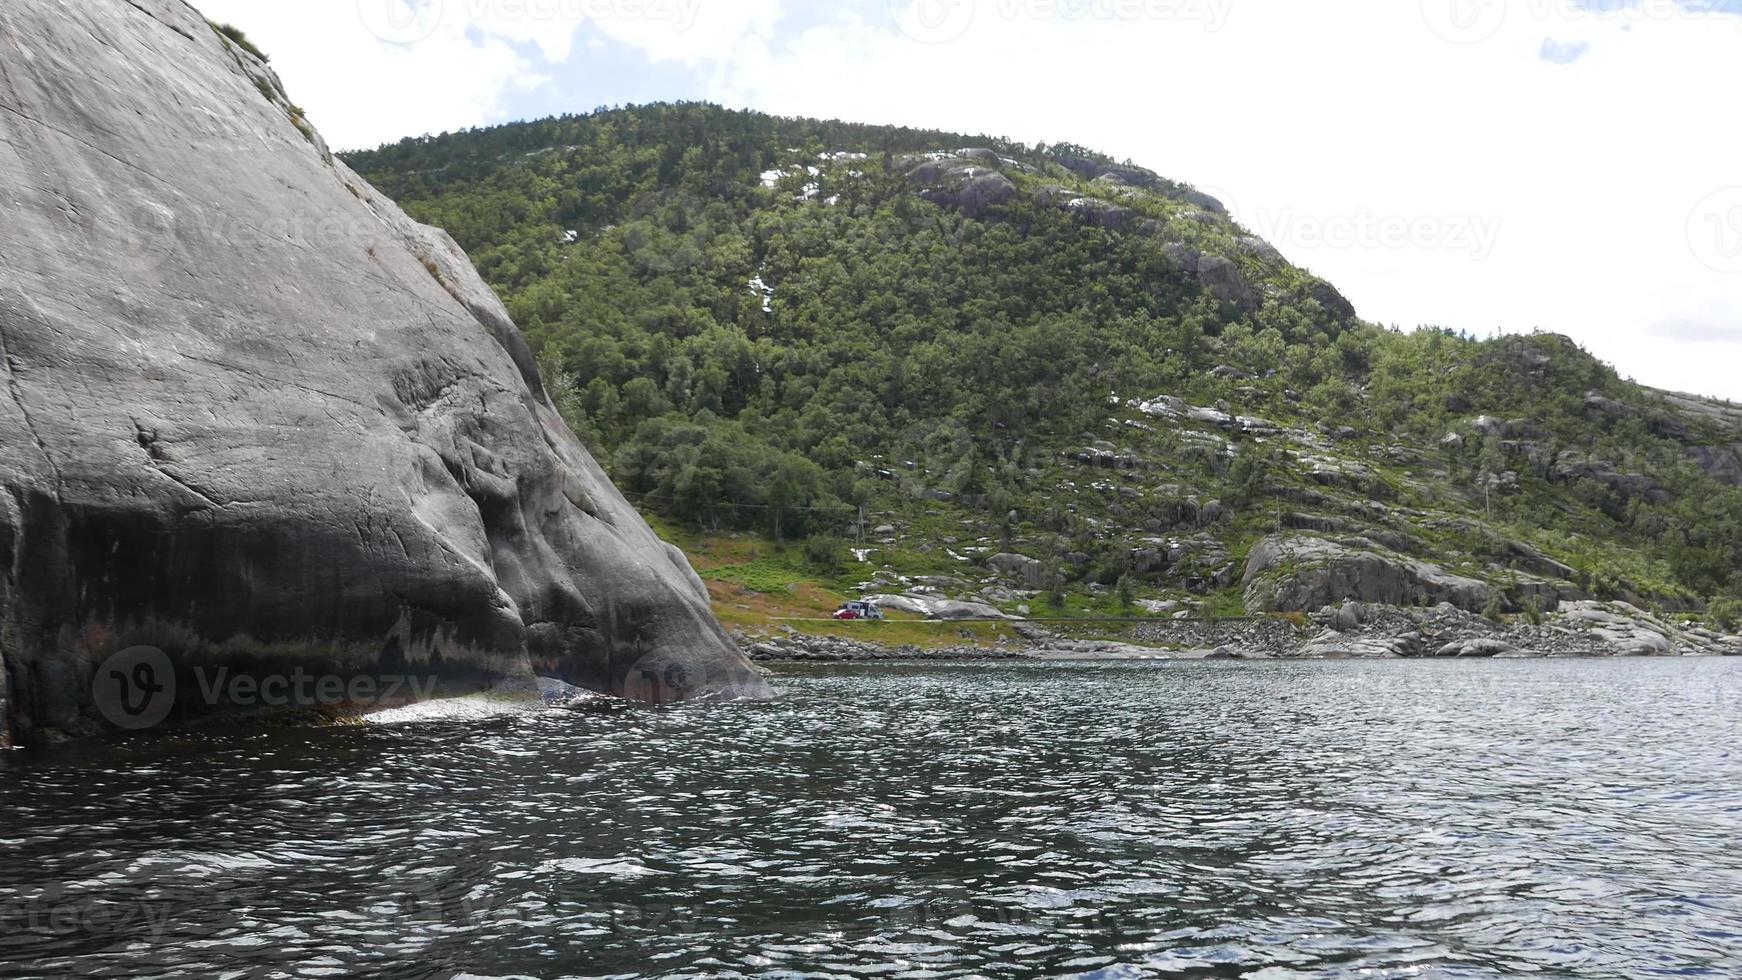 paysage montagneux et fjord, norvège photo